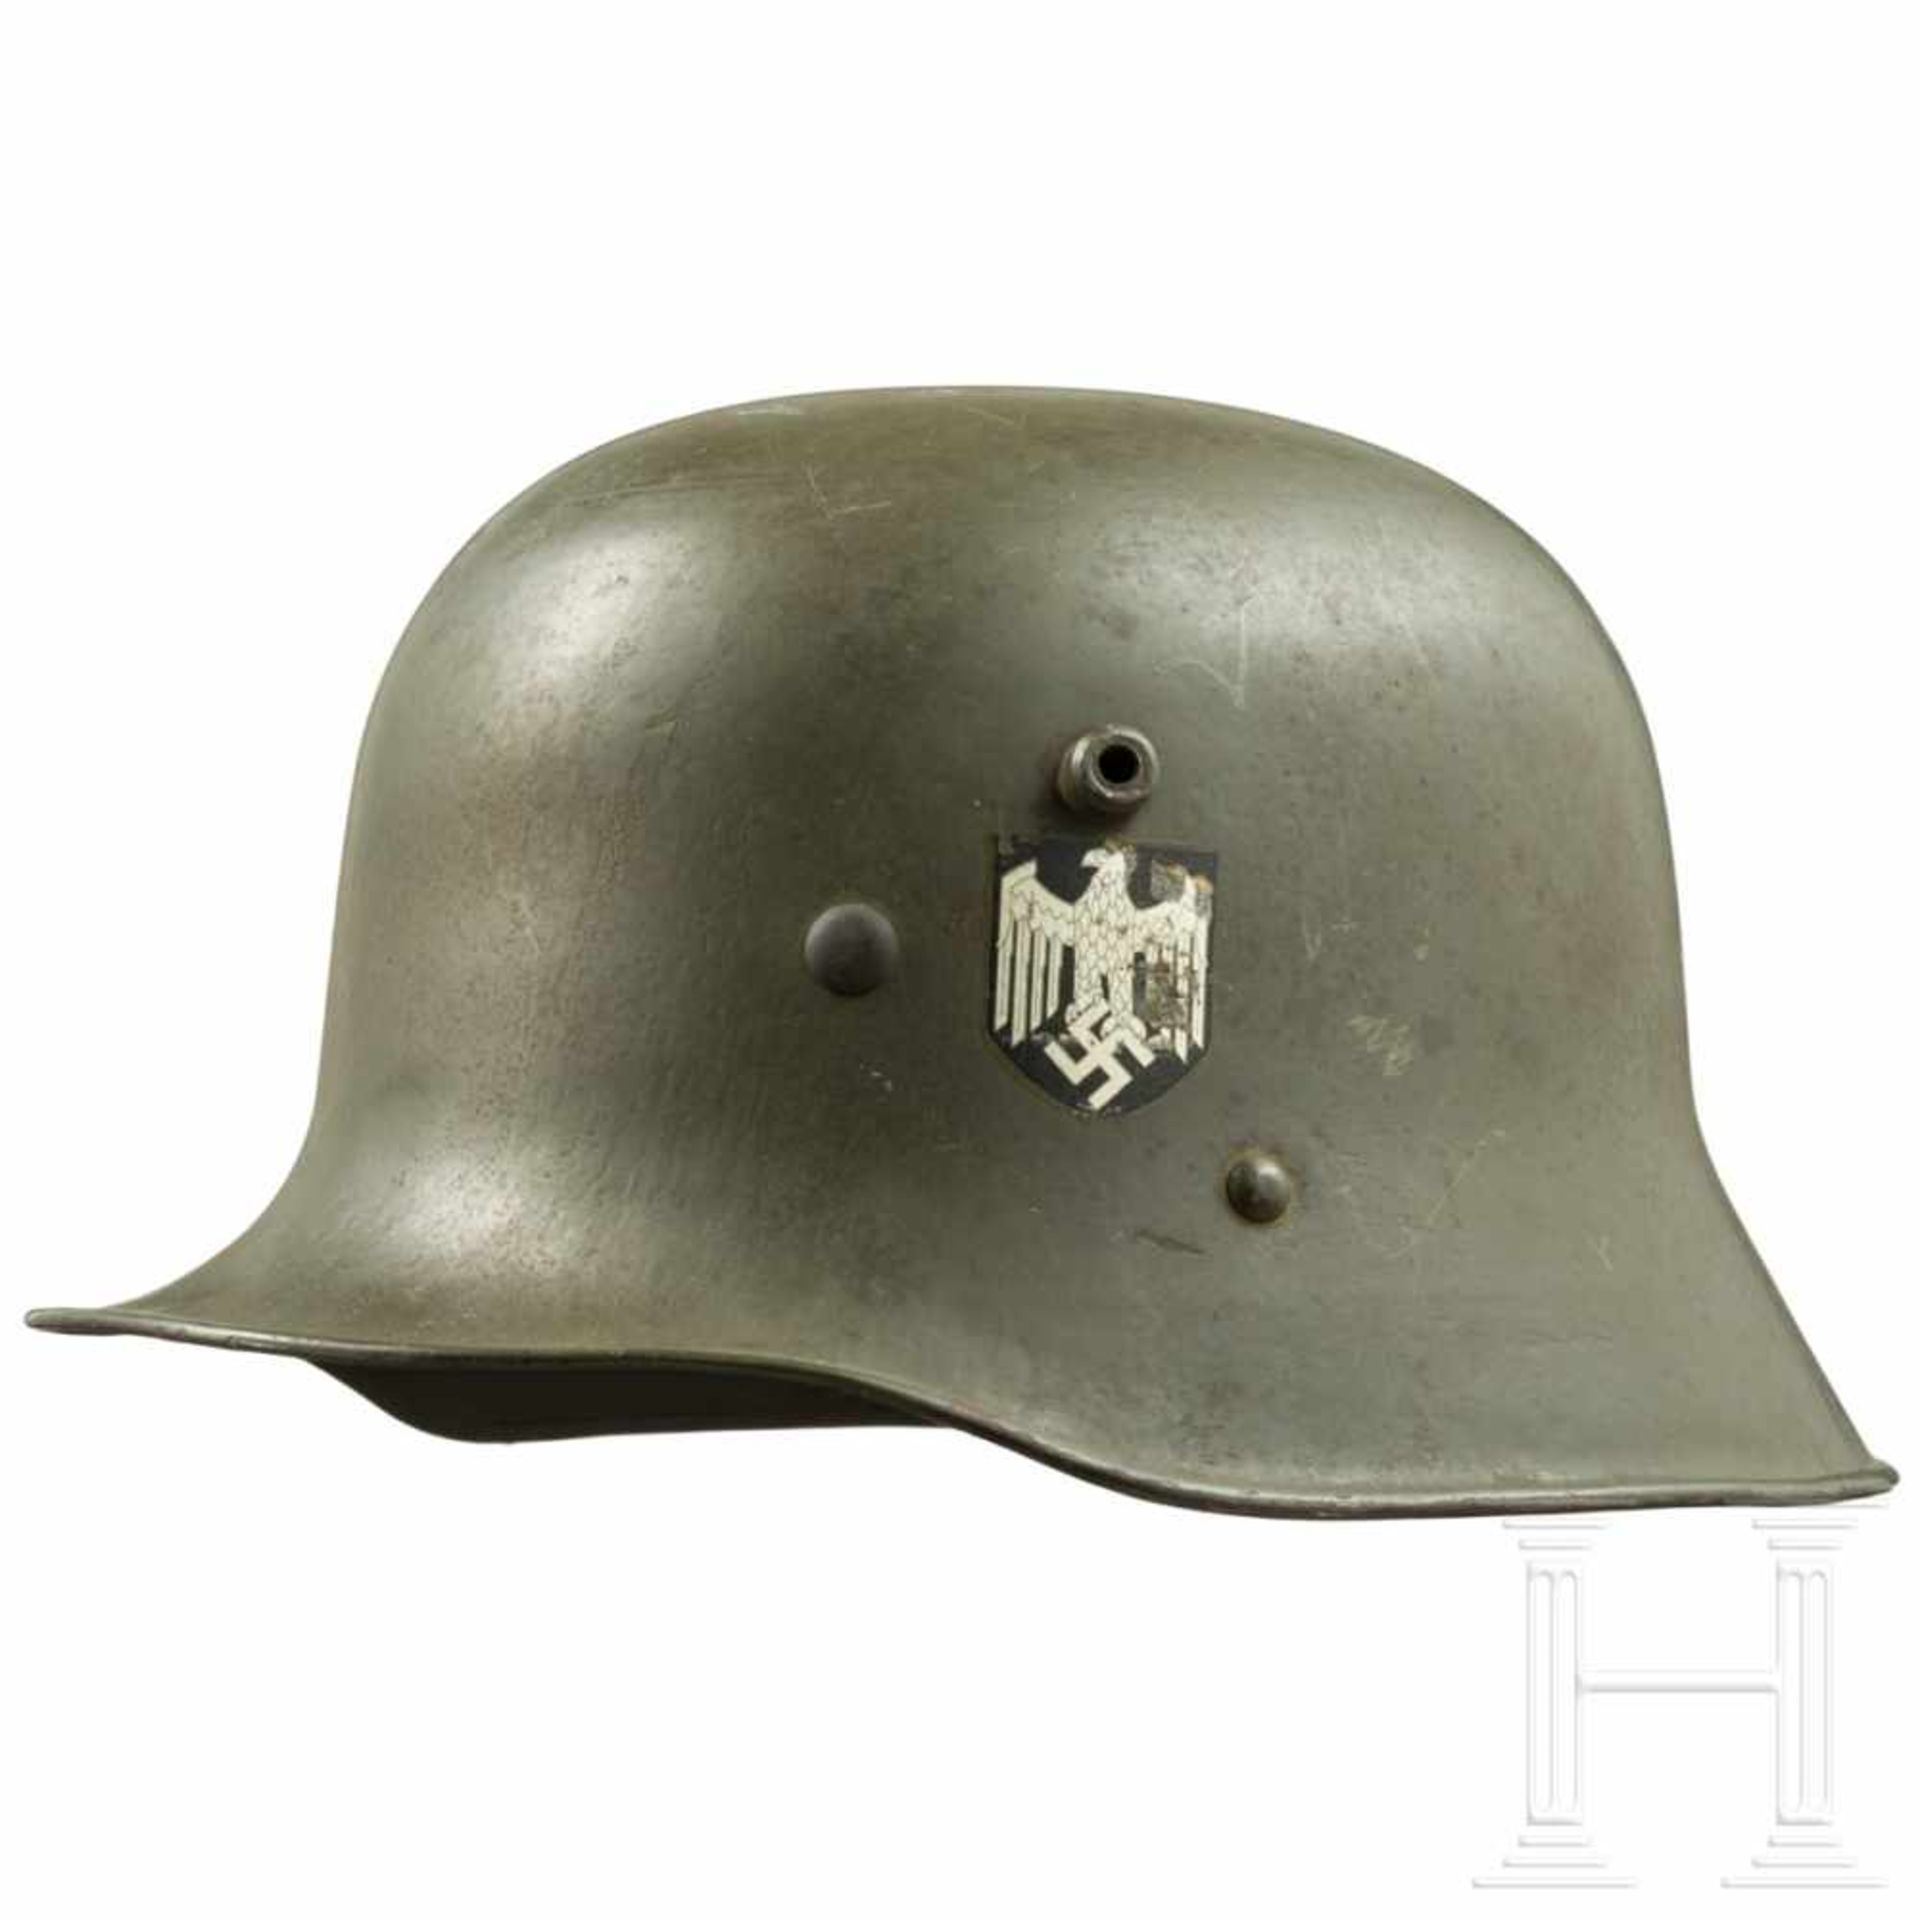 Stahlhelm M 17/35 des Heeres mit beiden AbzeichenUm 1938 vom österreichischen Bundesheer in die